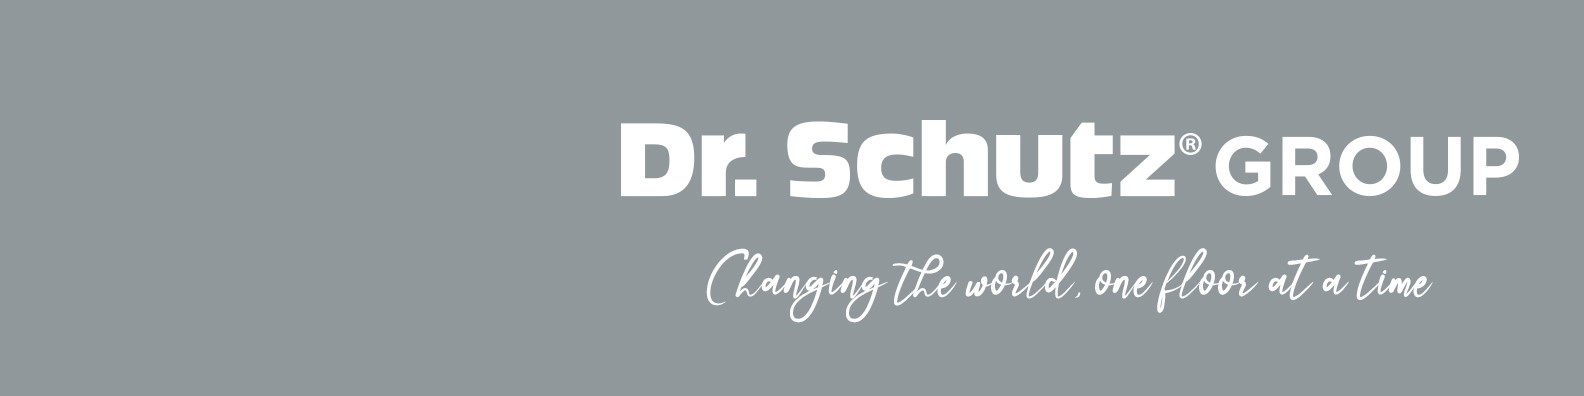 Firmengeschichte von Dr. Schutz GmbH